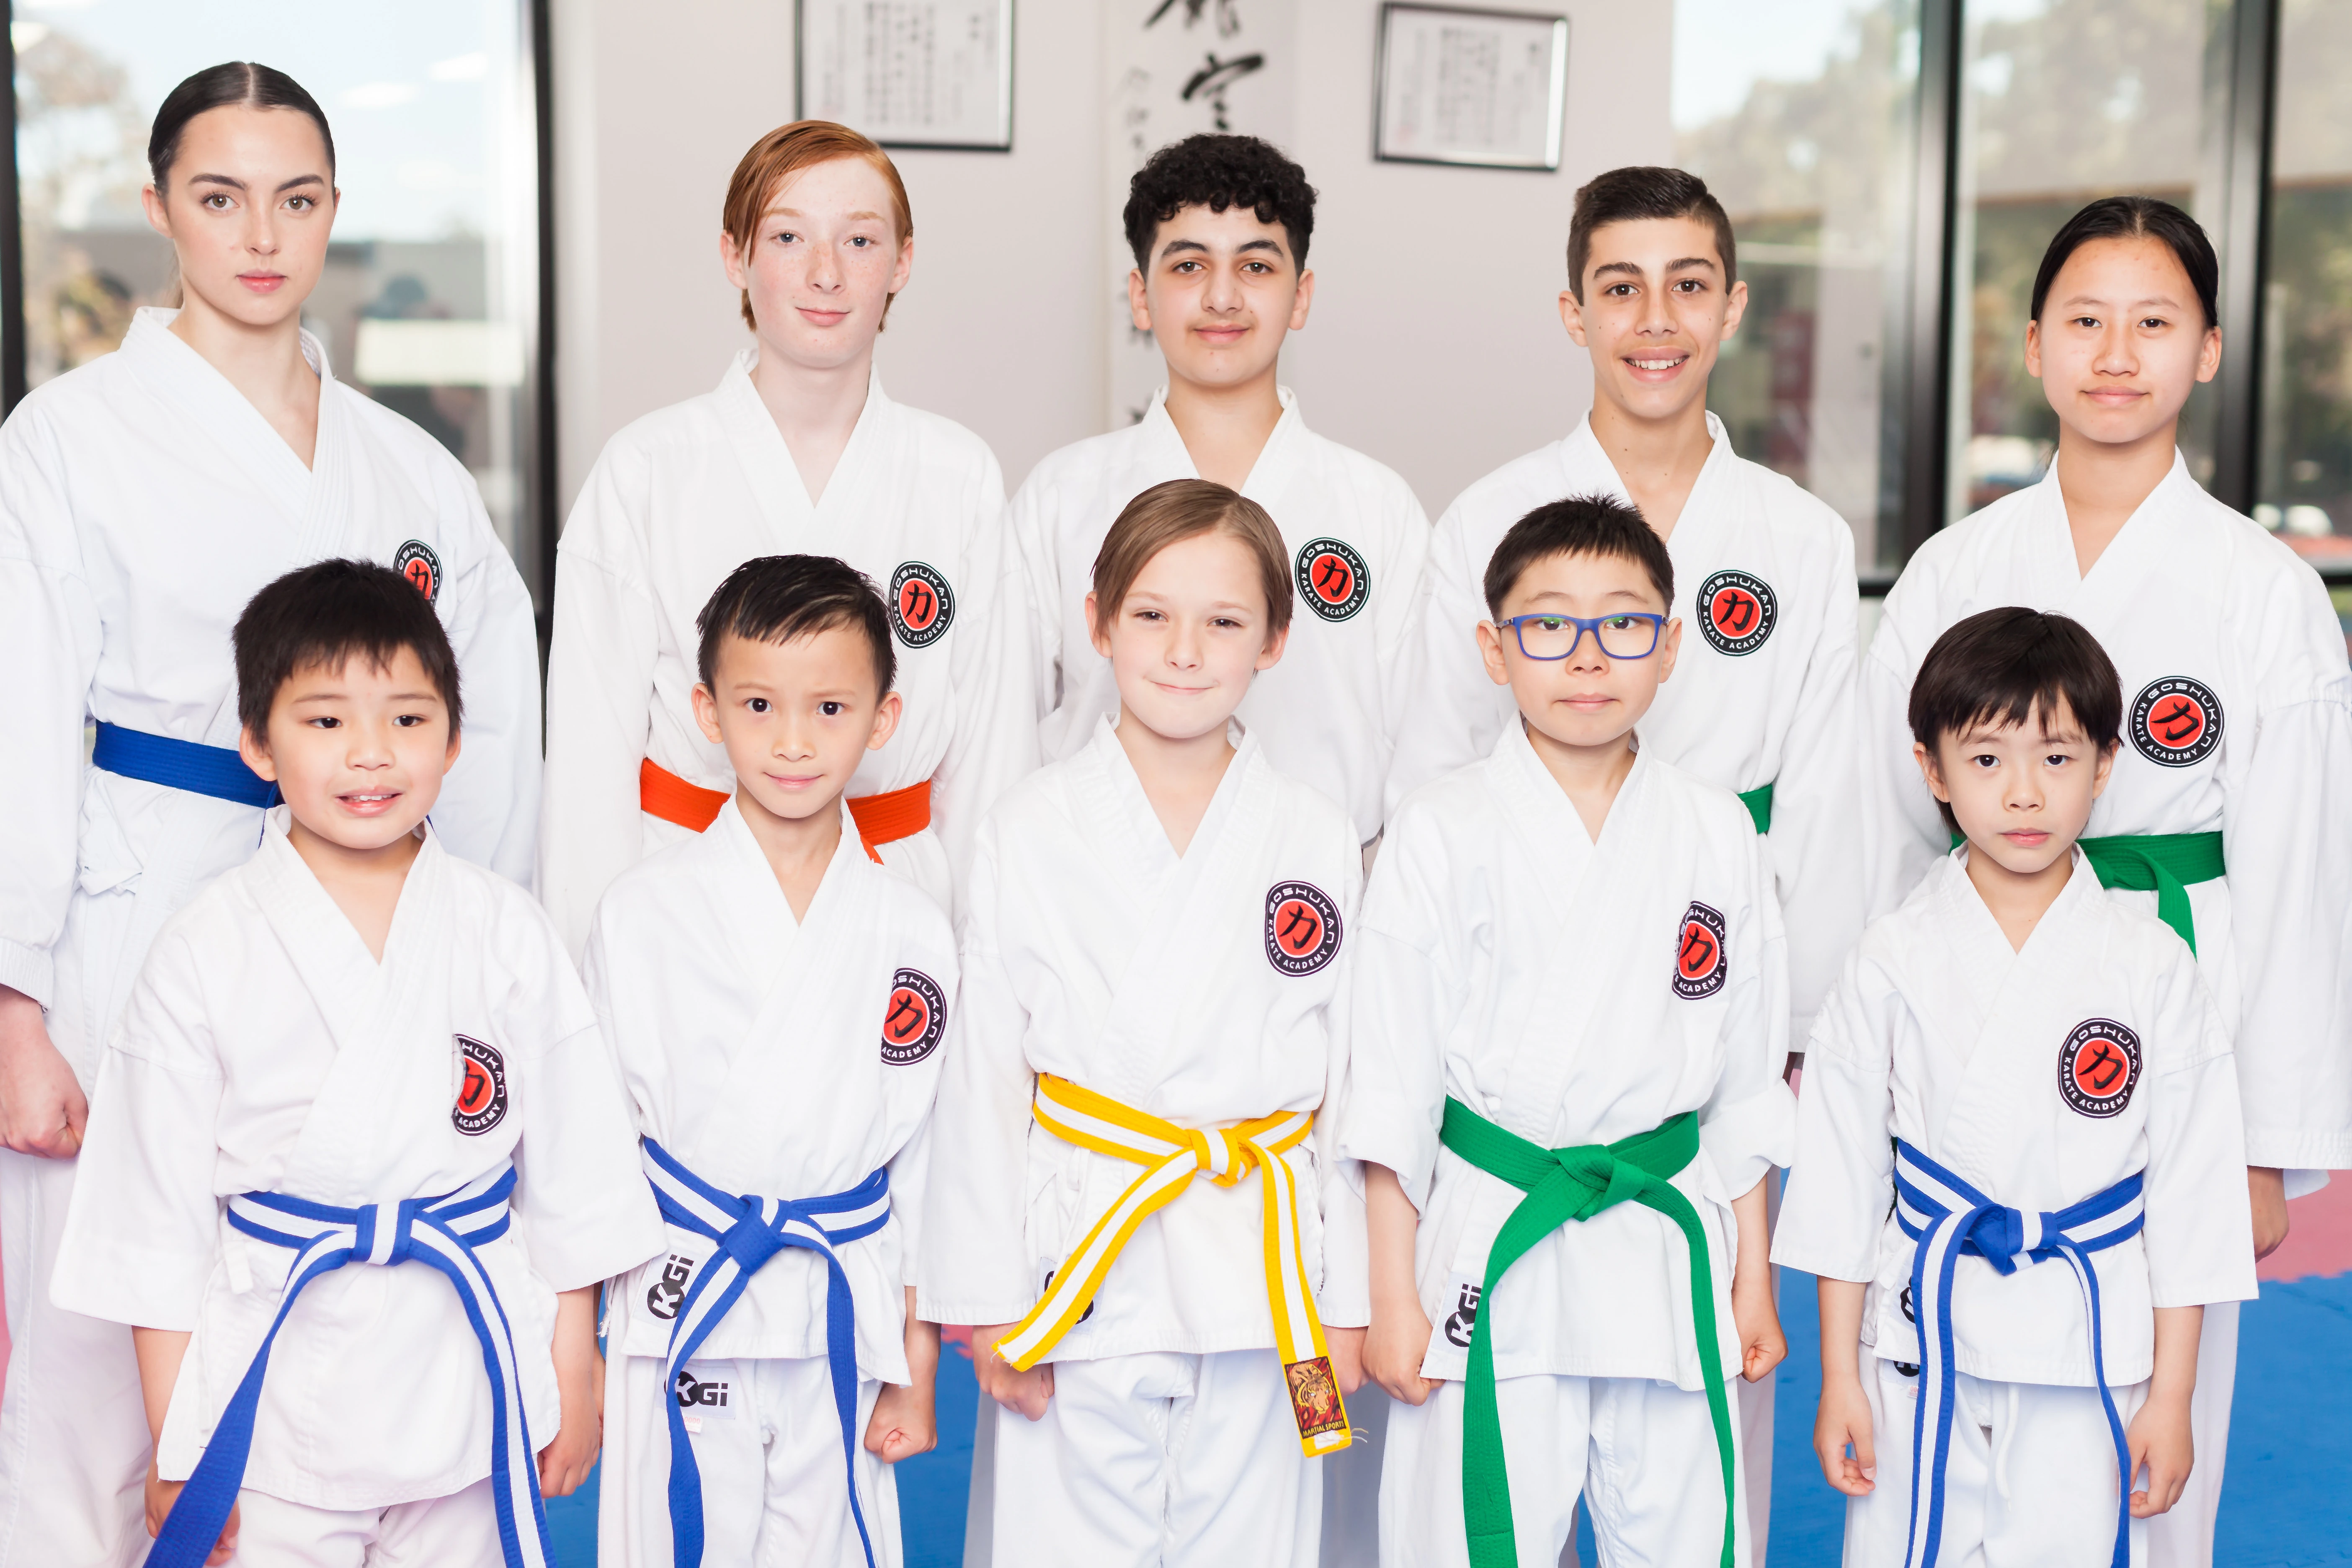 Goshukan Karate Academy